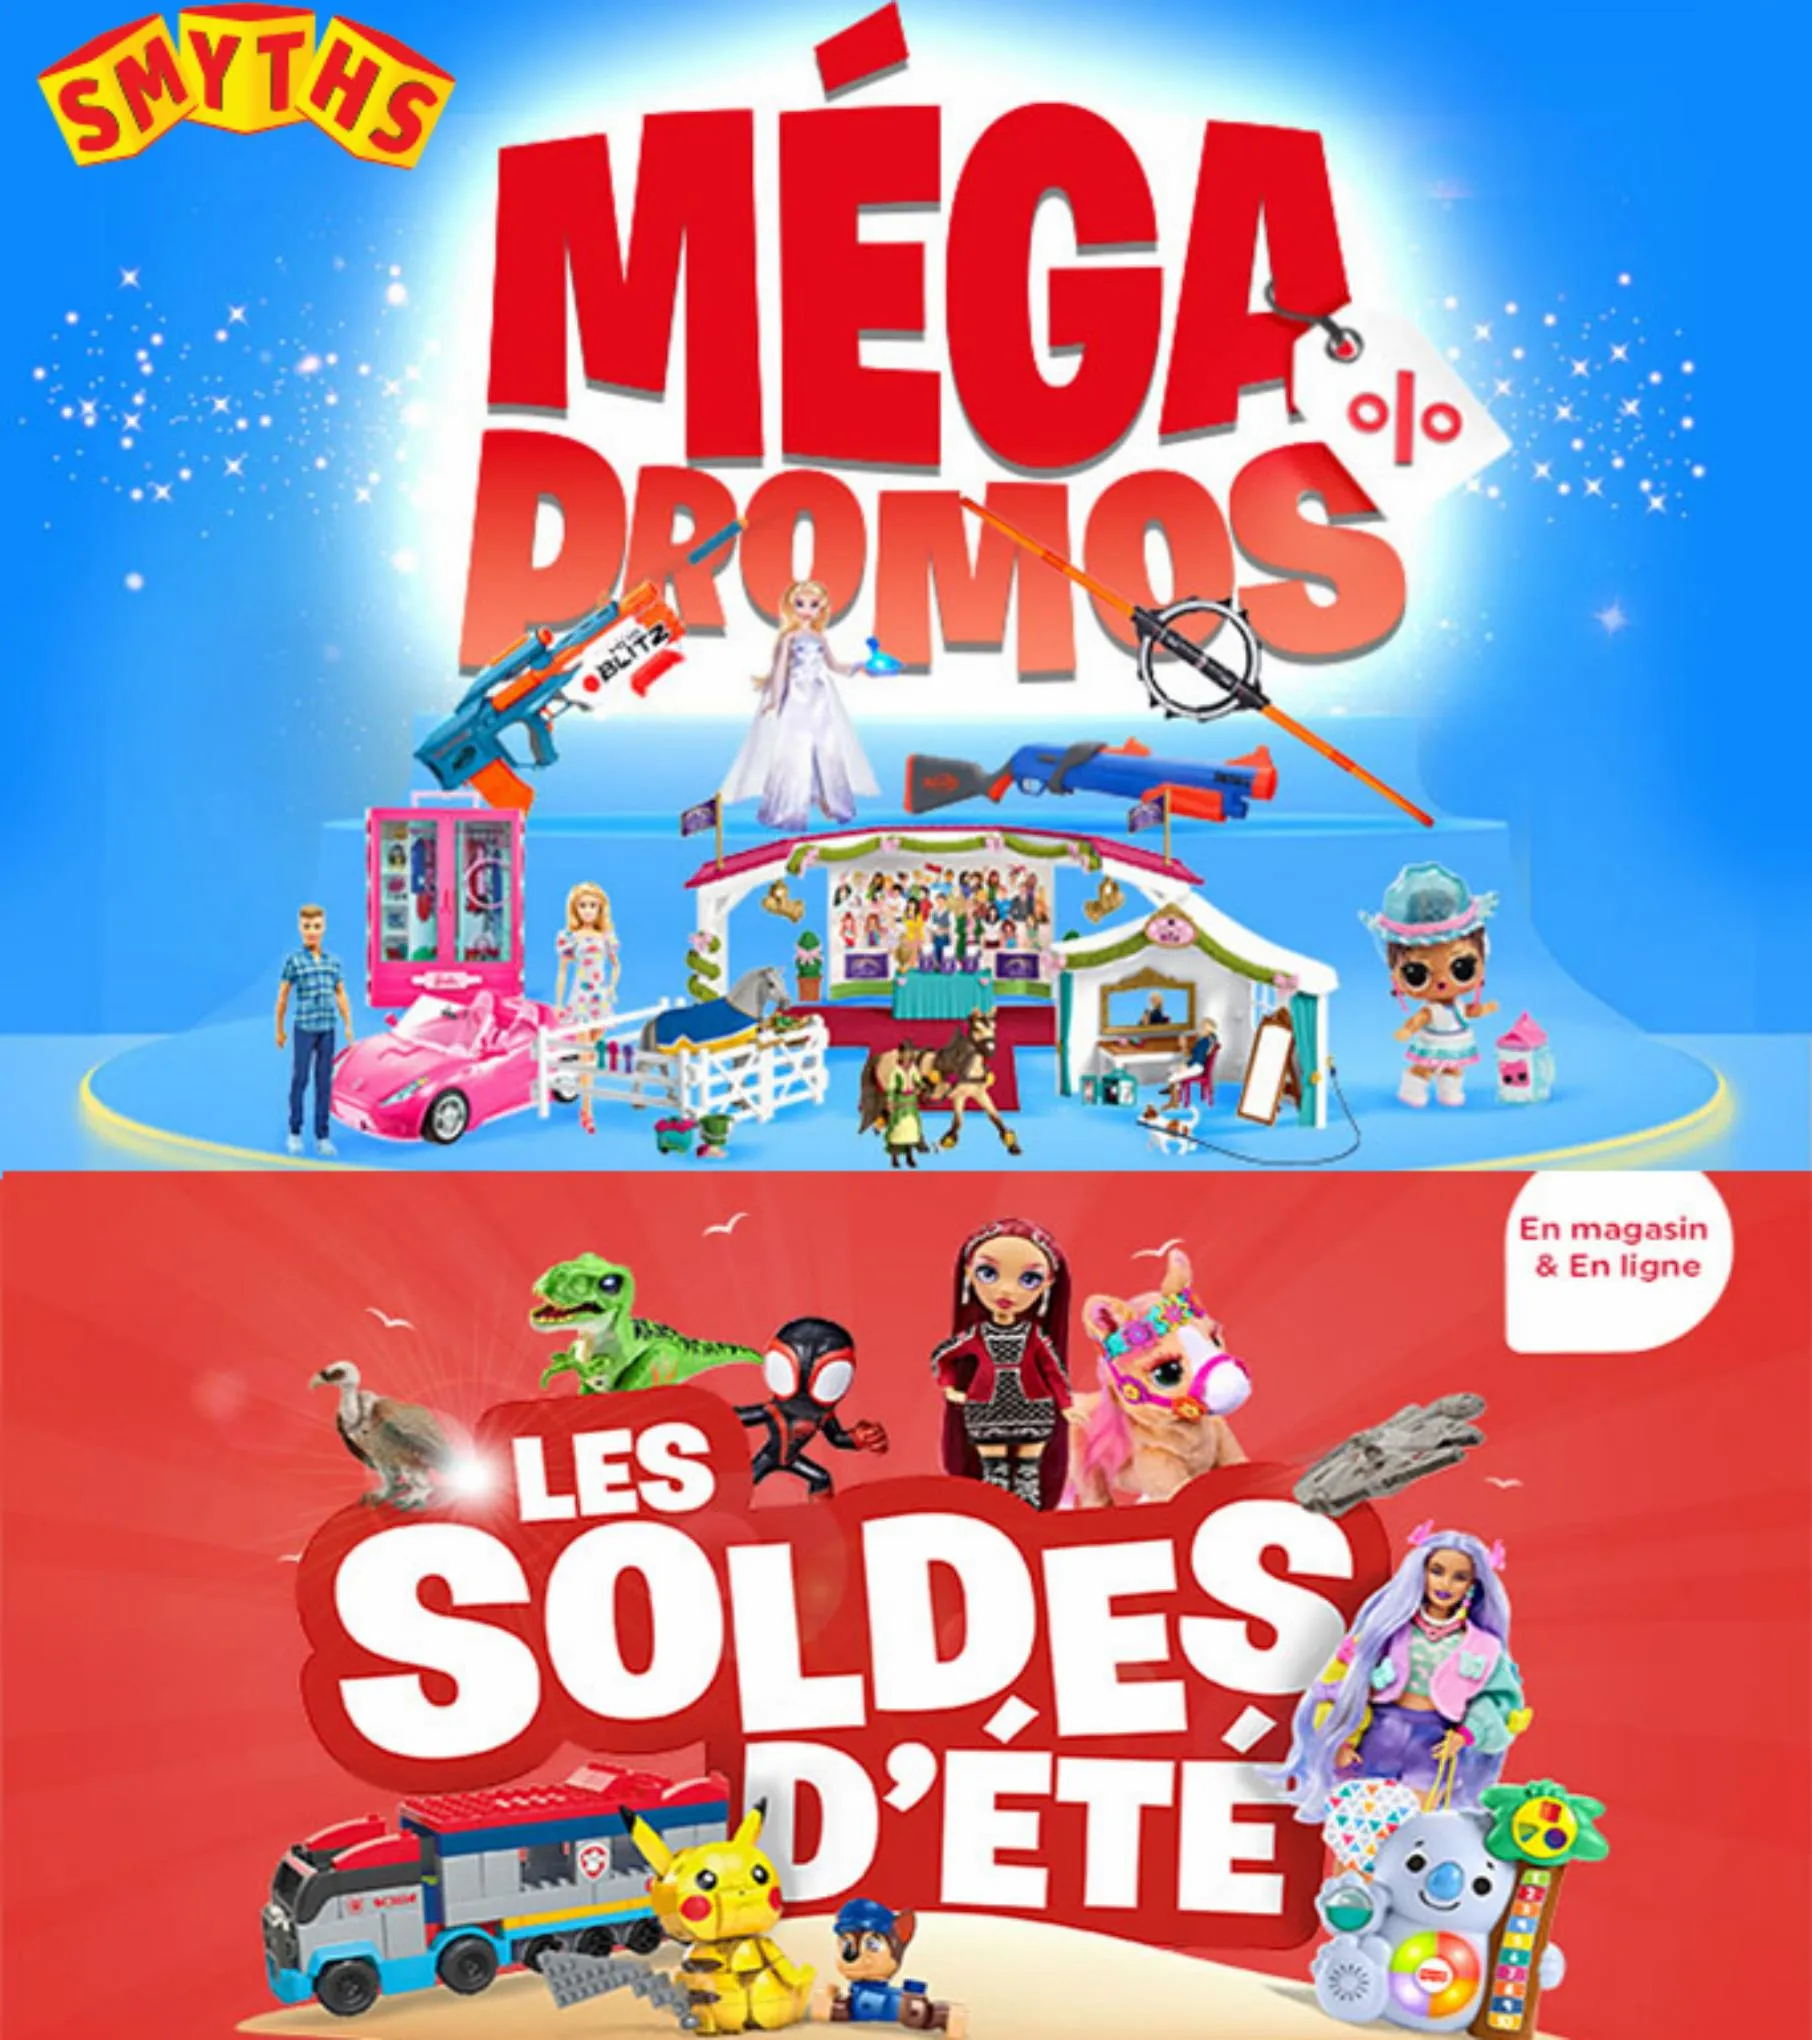 Catalogue Mega promos & Les soldes d'ete, page 00001